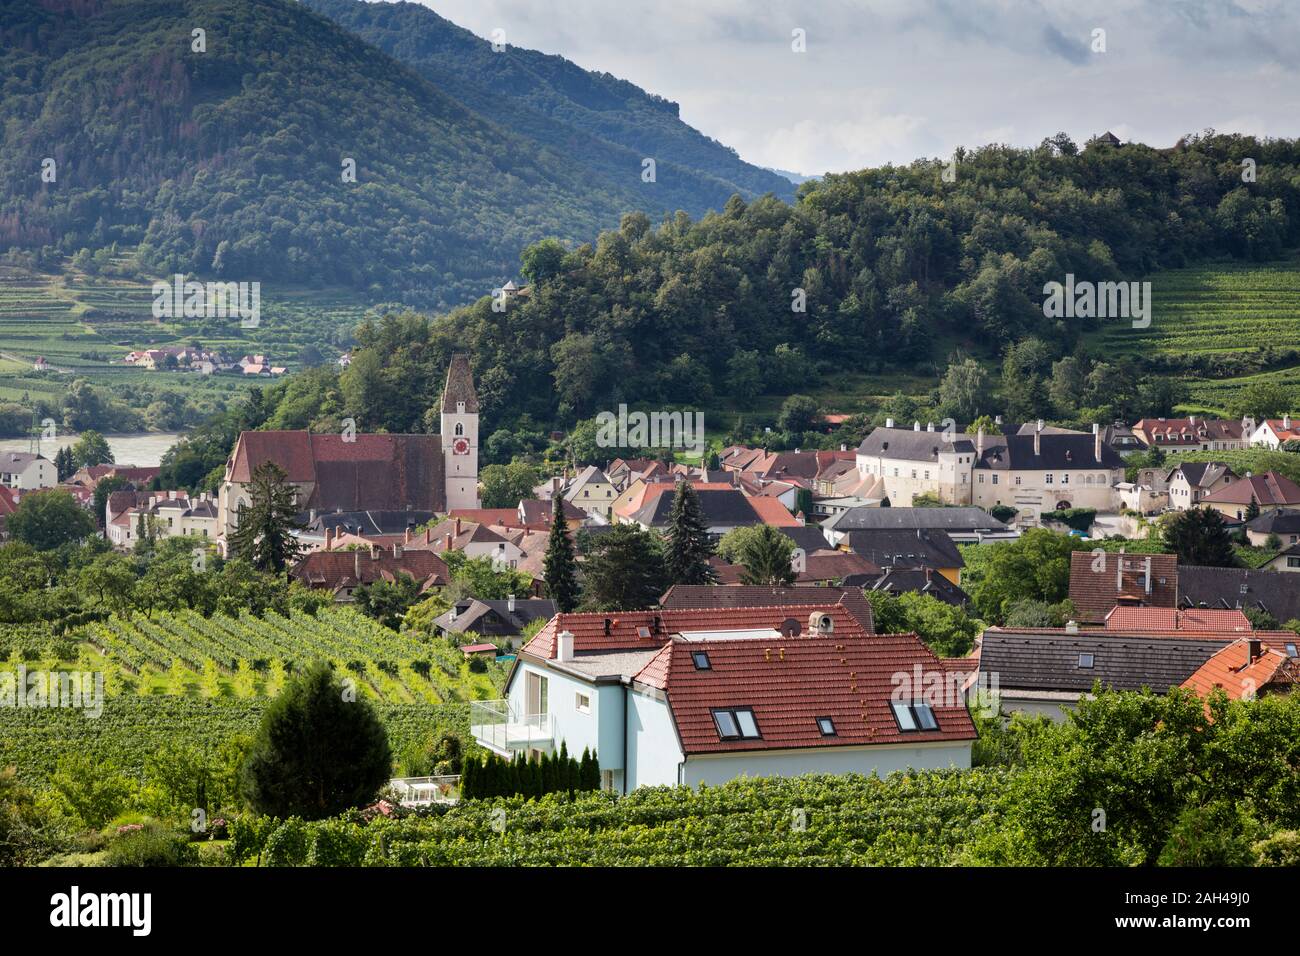 Austria Austria Inferior Wachau, Spitz, an der Donau, vista de la ciudad y paisaje Foto de stock